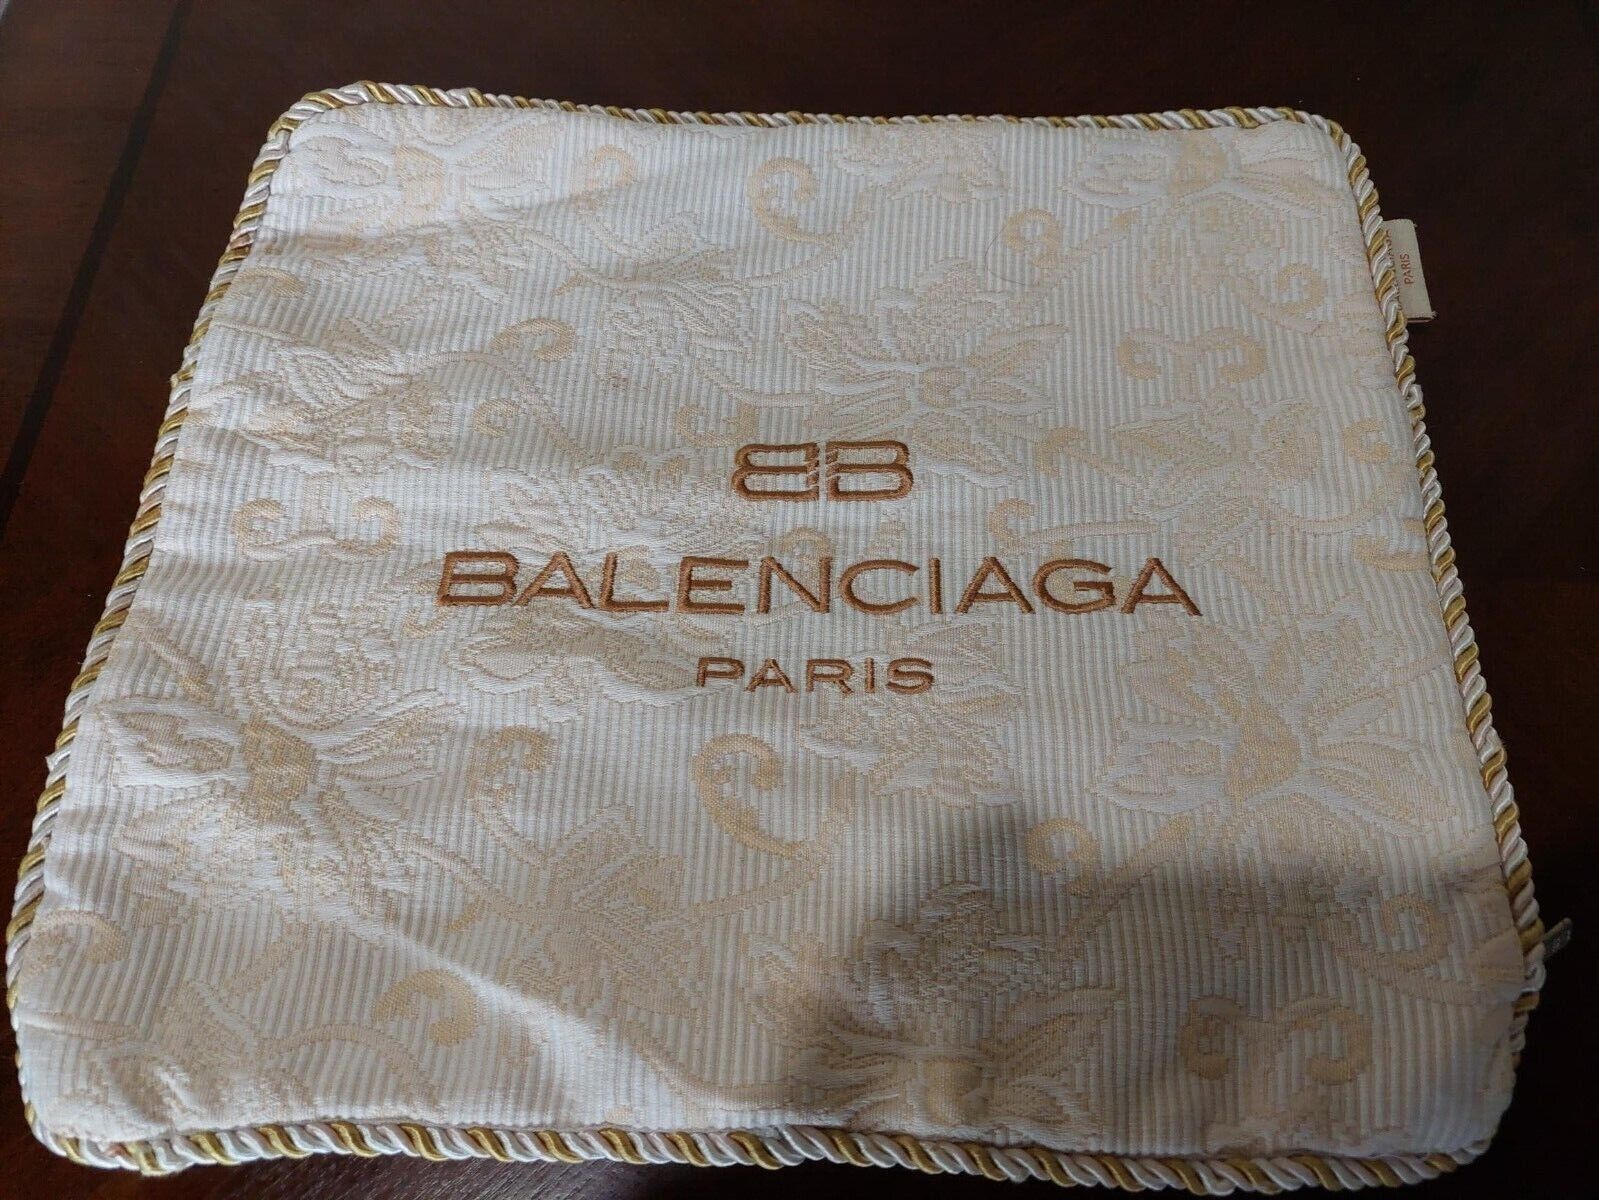 Balenciaga + Ronan Air Airline Promotional Pillowcase Cover